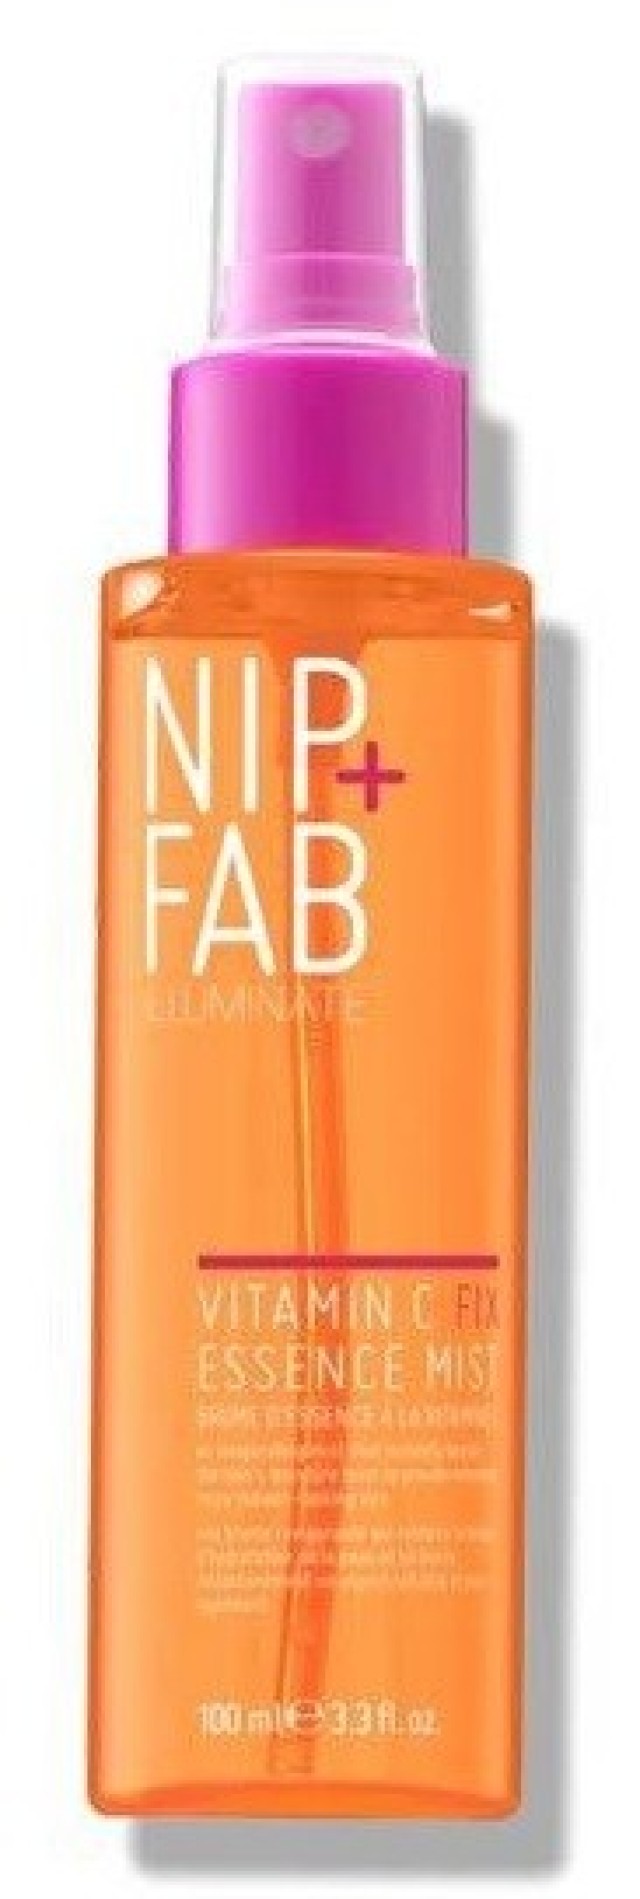 Nip+Fab Vitamin C Essence Mist Αναζωογονητικό Mist 100ml